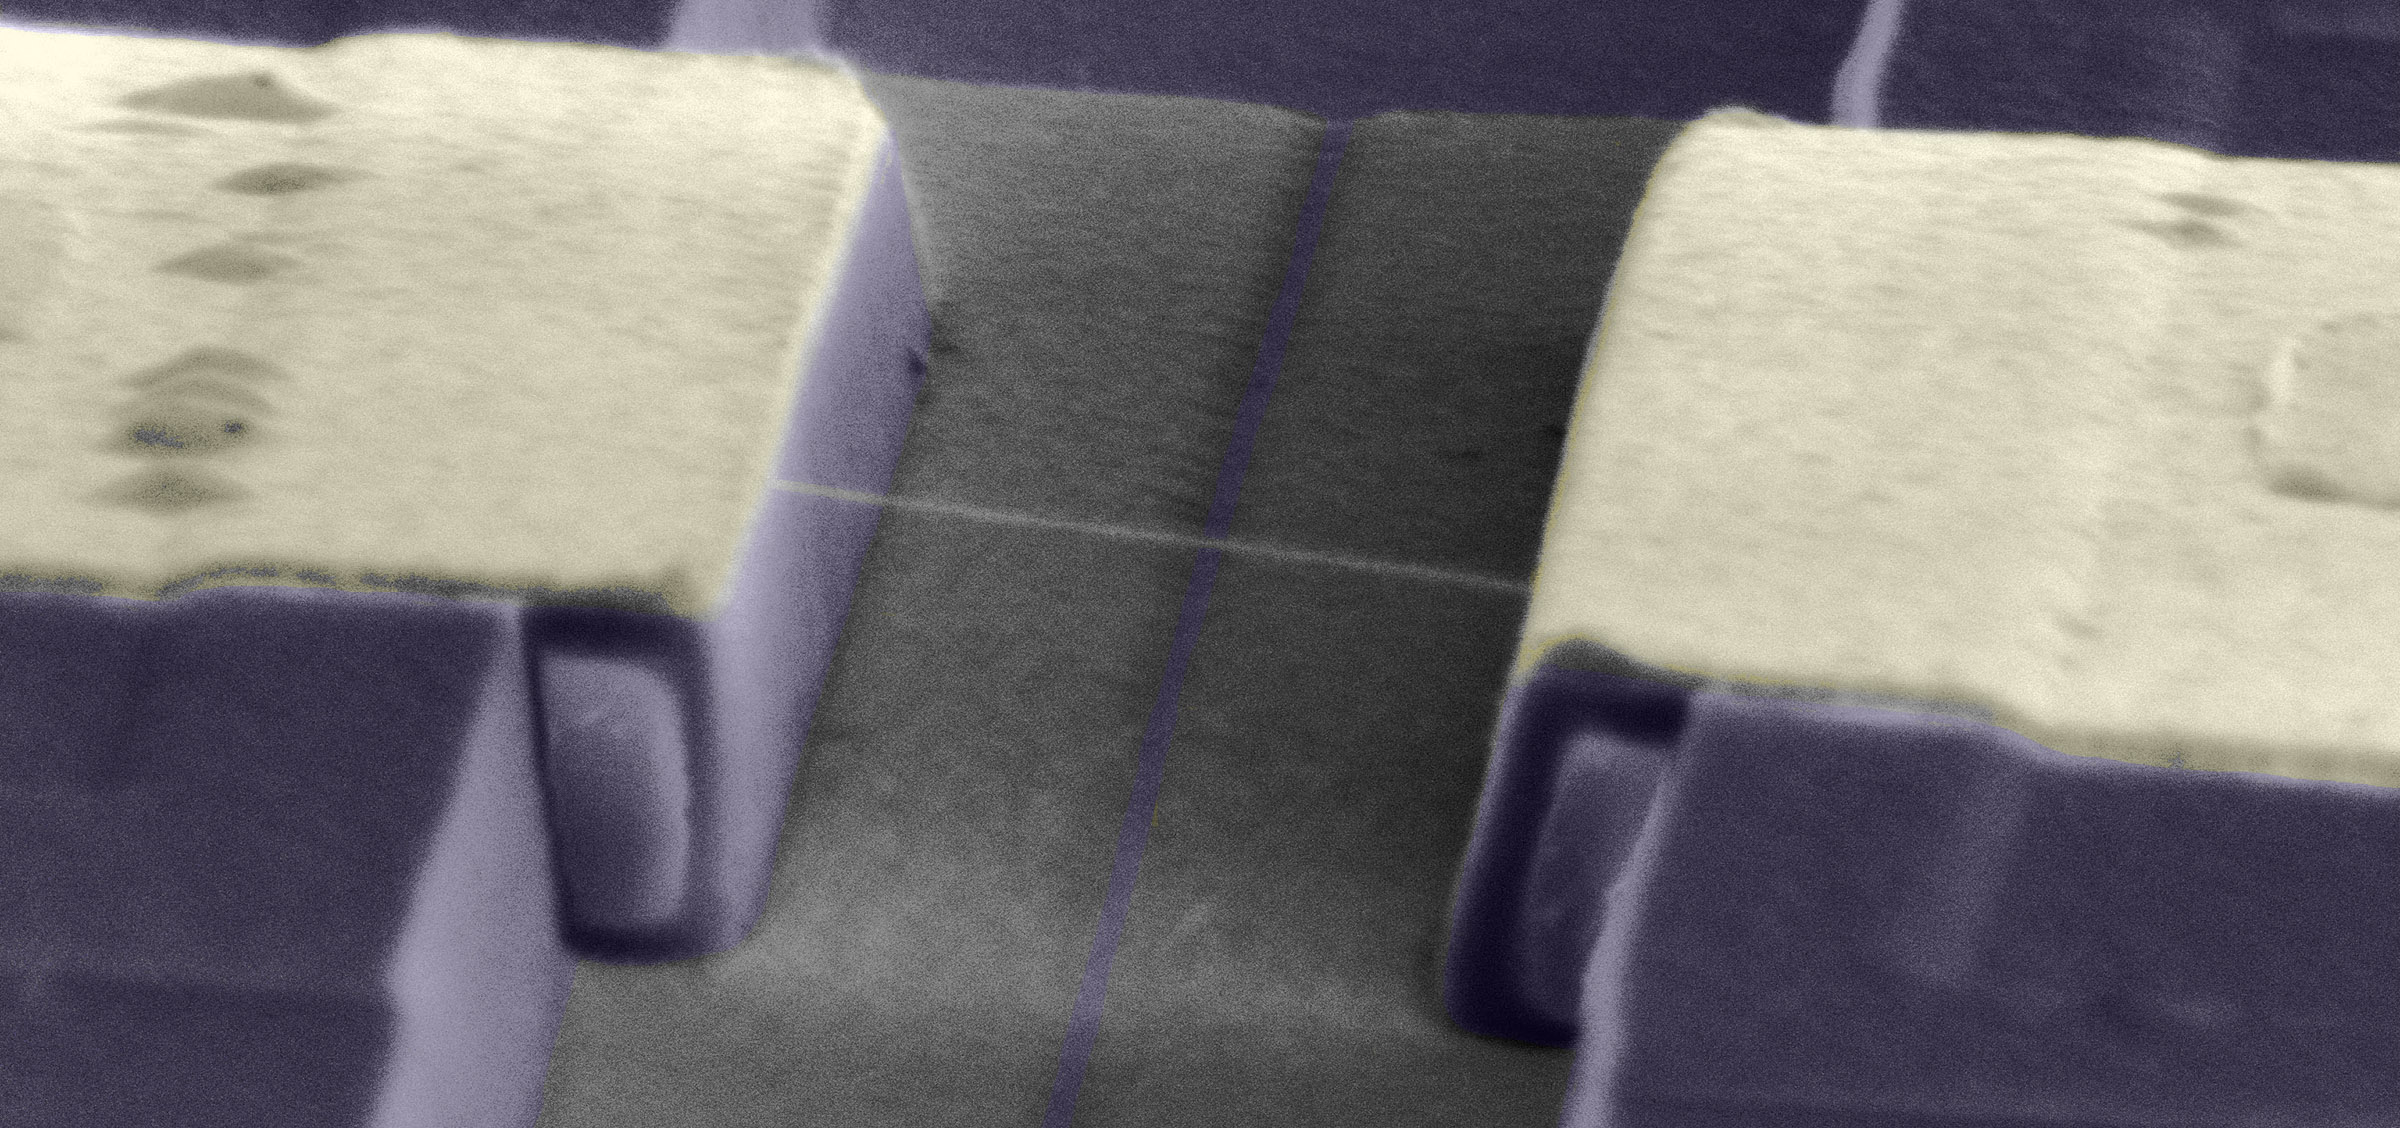 Carbon nanotube devices